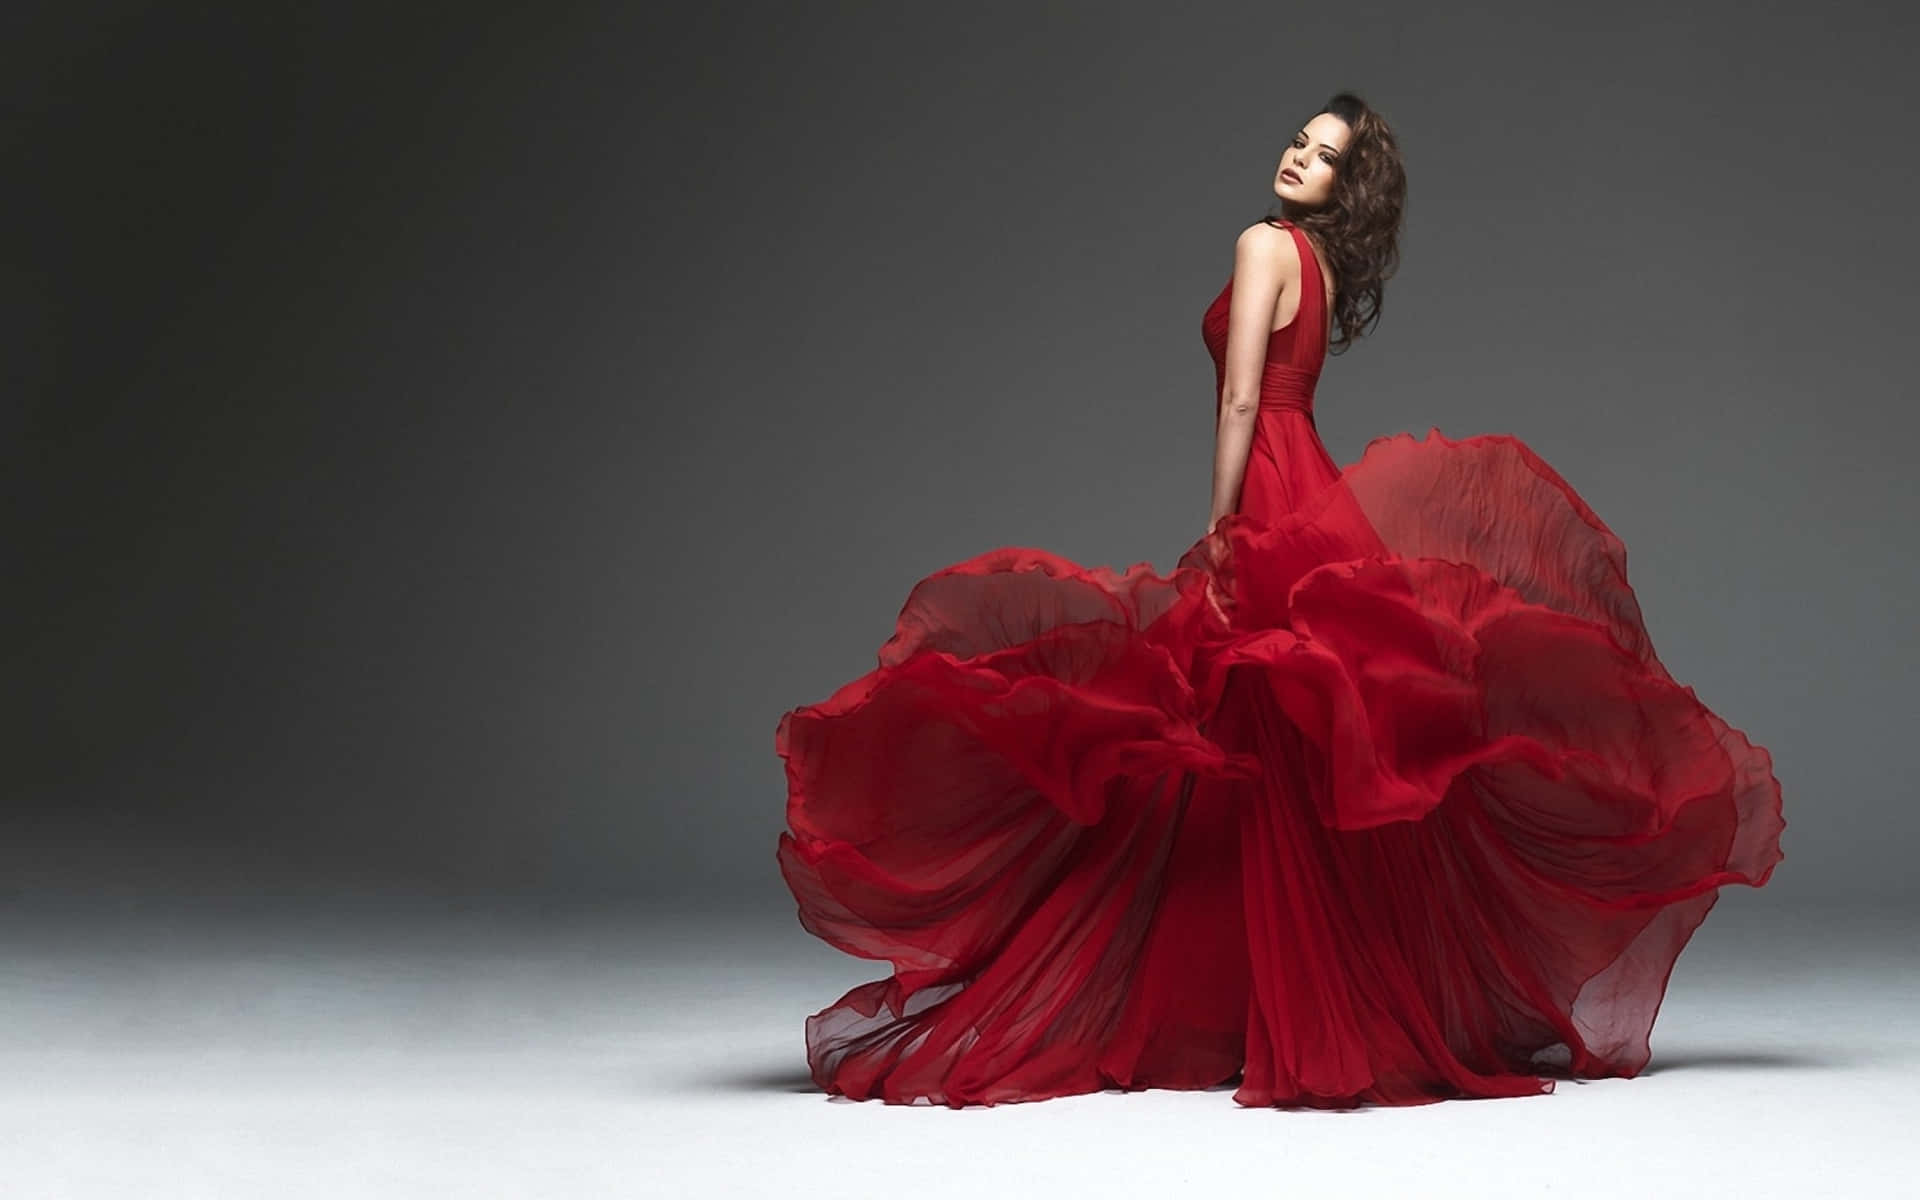 Einefrau In Einem Roten Kleid Posiert.